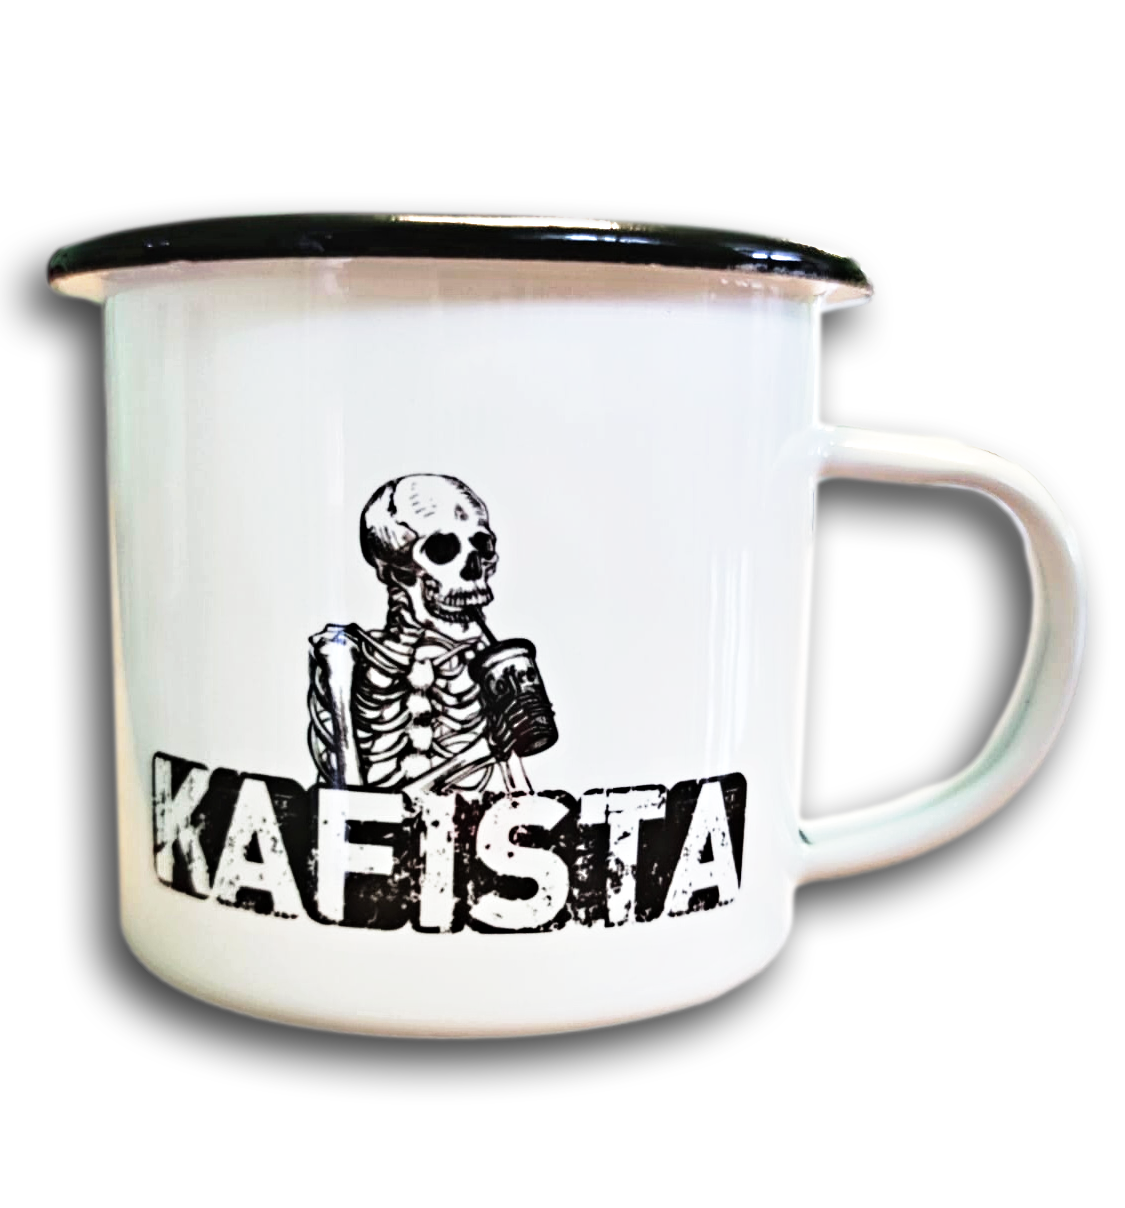 Plecháček Kafista 0,33l - Plechový hrnek s logem Kafista, černý lem